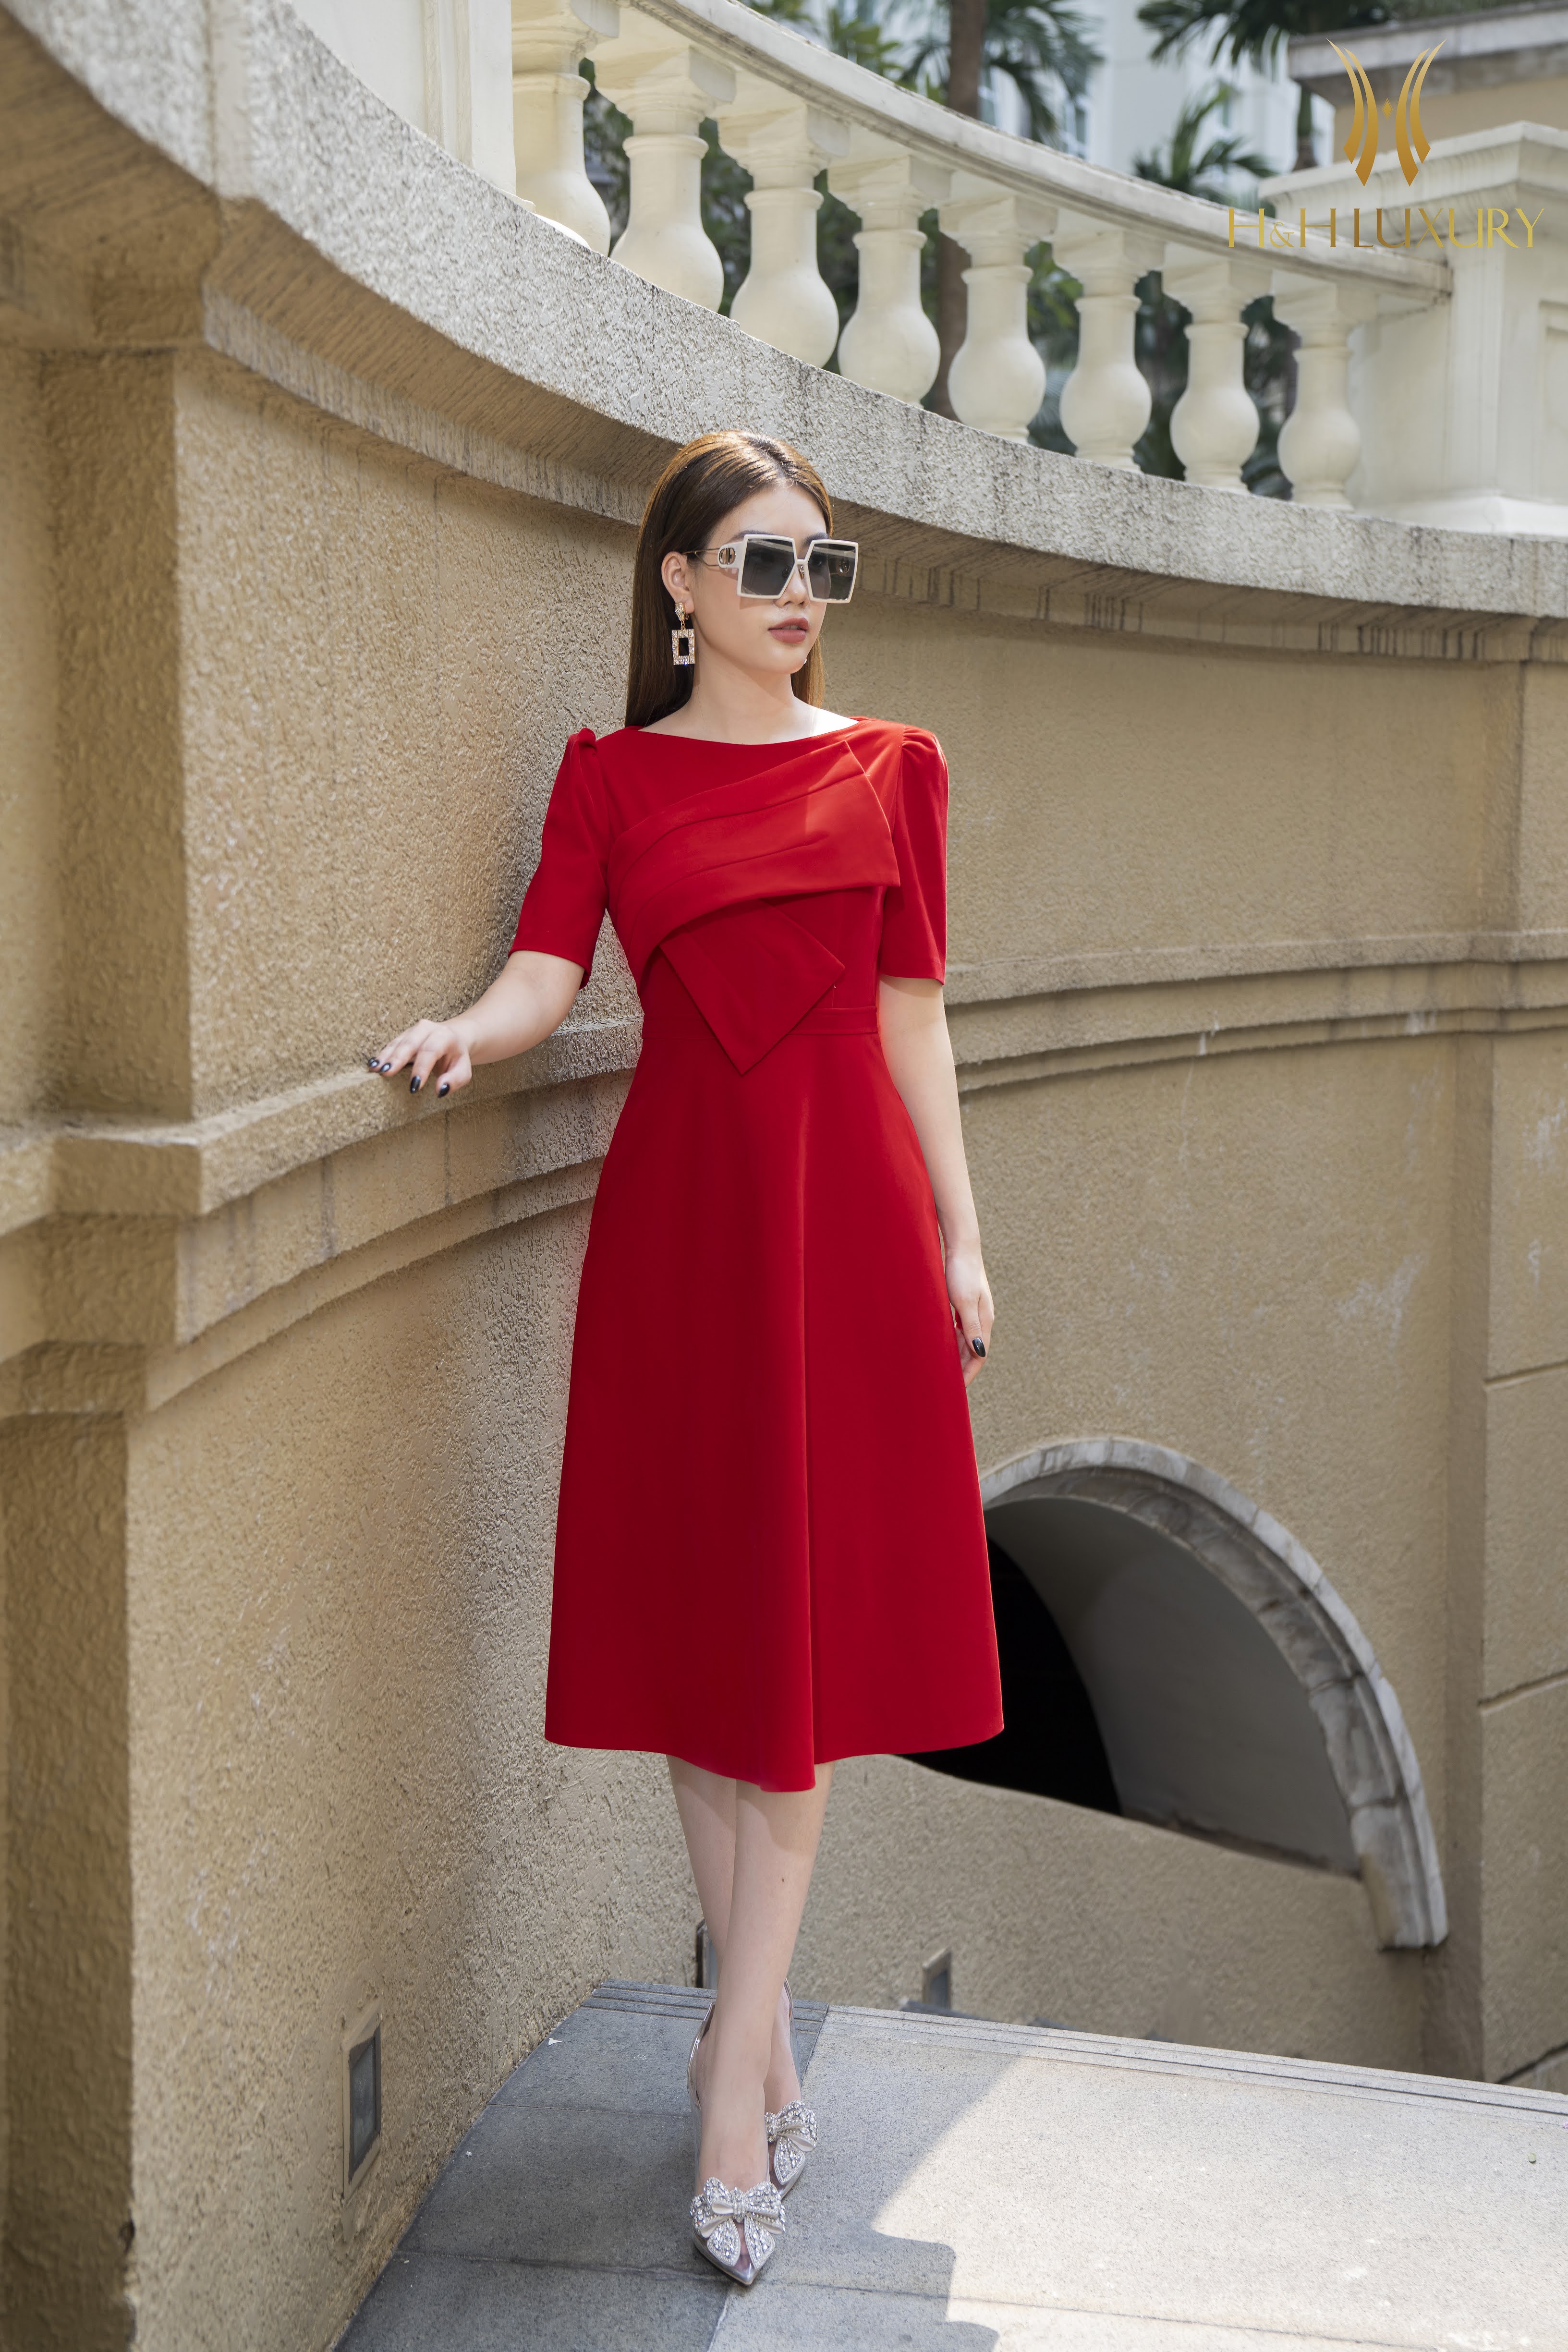 Đầm nhung đỏ xòe tay phối lưới bi - Bán sỉ thời trang mỹ phẩm